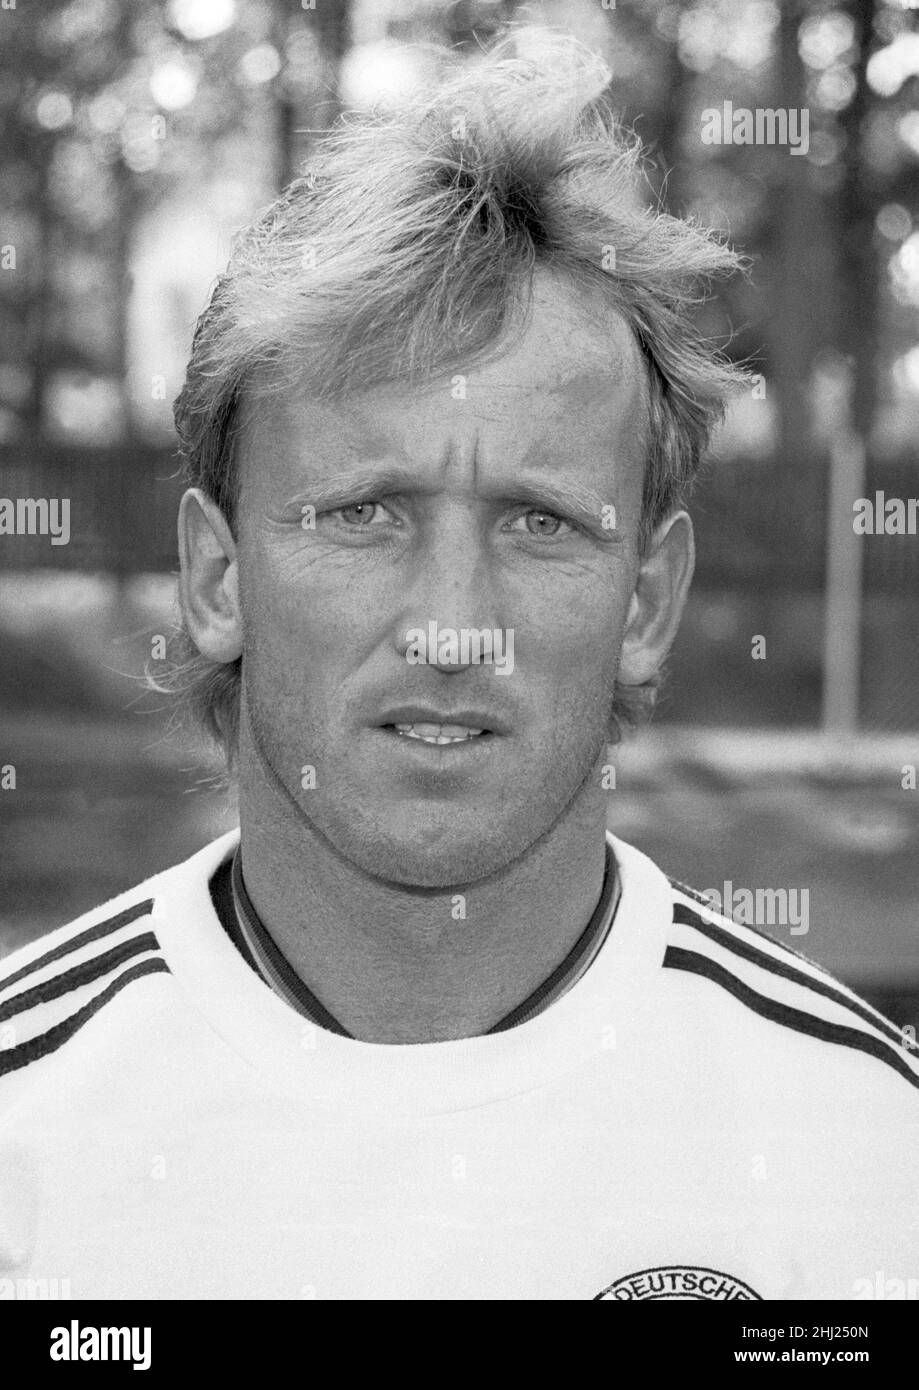 ANDREAS BREHME deutscher Fußballspieler bei der Europameisterschaft in Schweden 1992, Profi bei Inter Italien Stockfoto